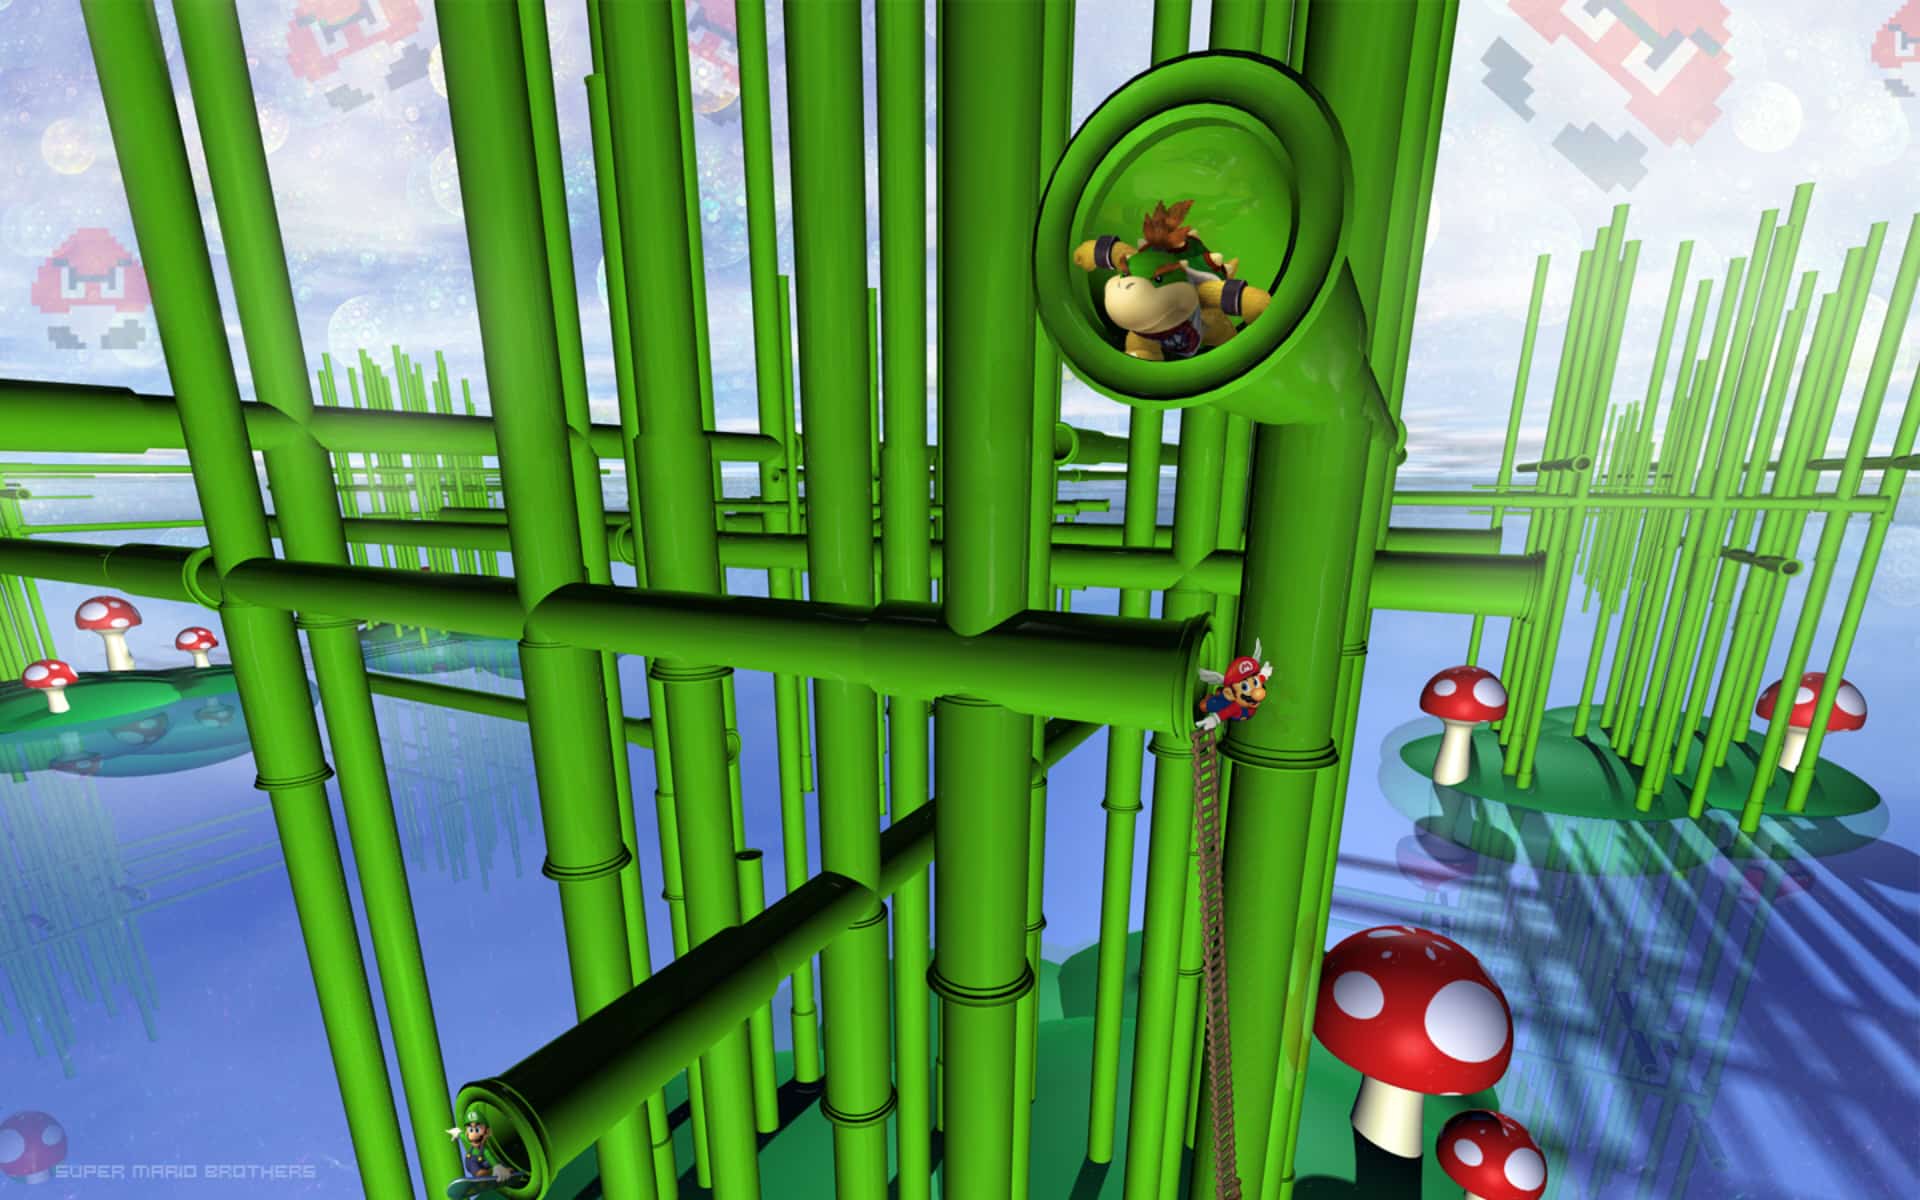 Hình nền Super Mario 3D Land với Bowser Jr. và Mario Bros sẽ mang đến cho bạn sự thú vị và niềm vui nếu bạn là một fan của nhân vật Mario. Với những hình ảnh đầy sắc màu và chi tiết, bạn sẽ không muốn bỏ lỡ cơ hội để tải và sử dụng hình nền này. 